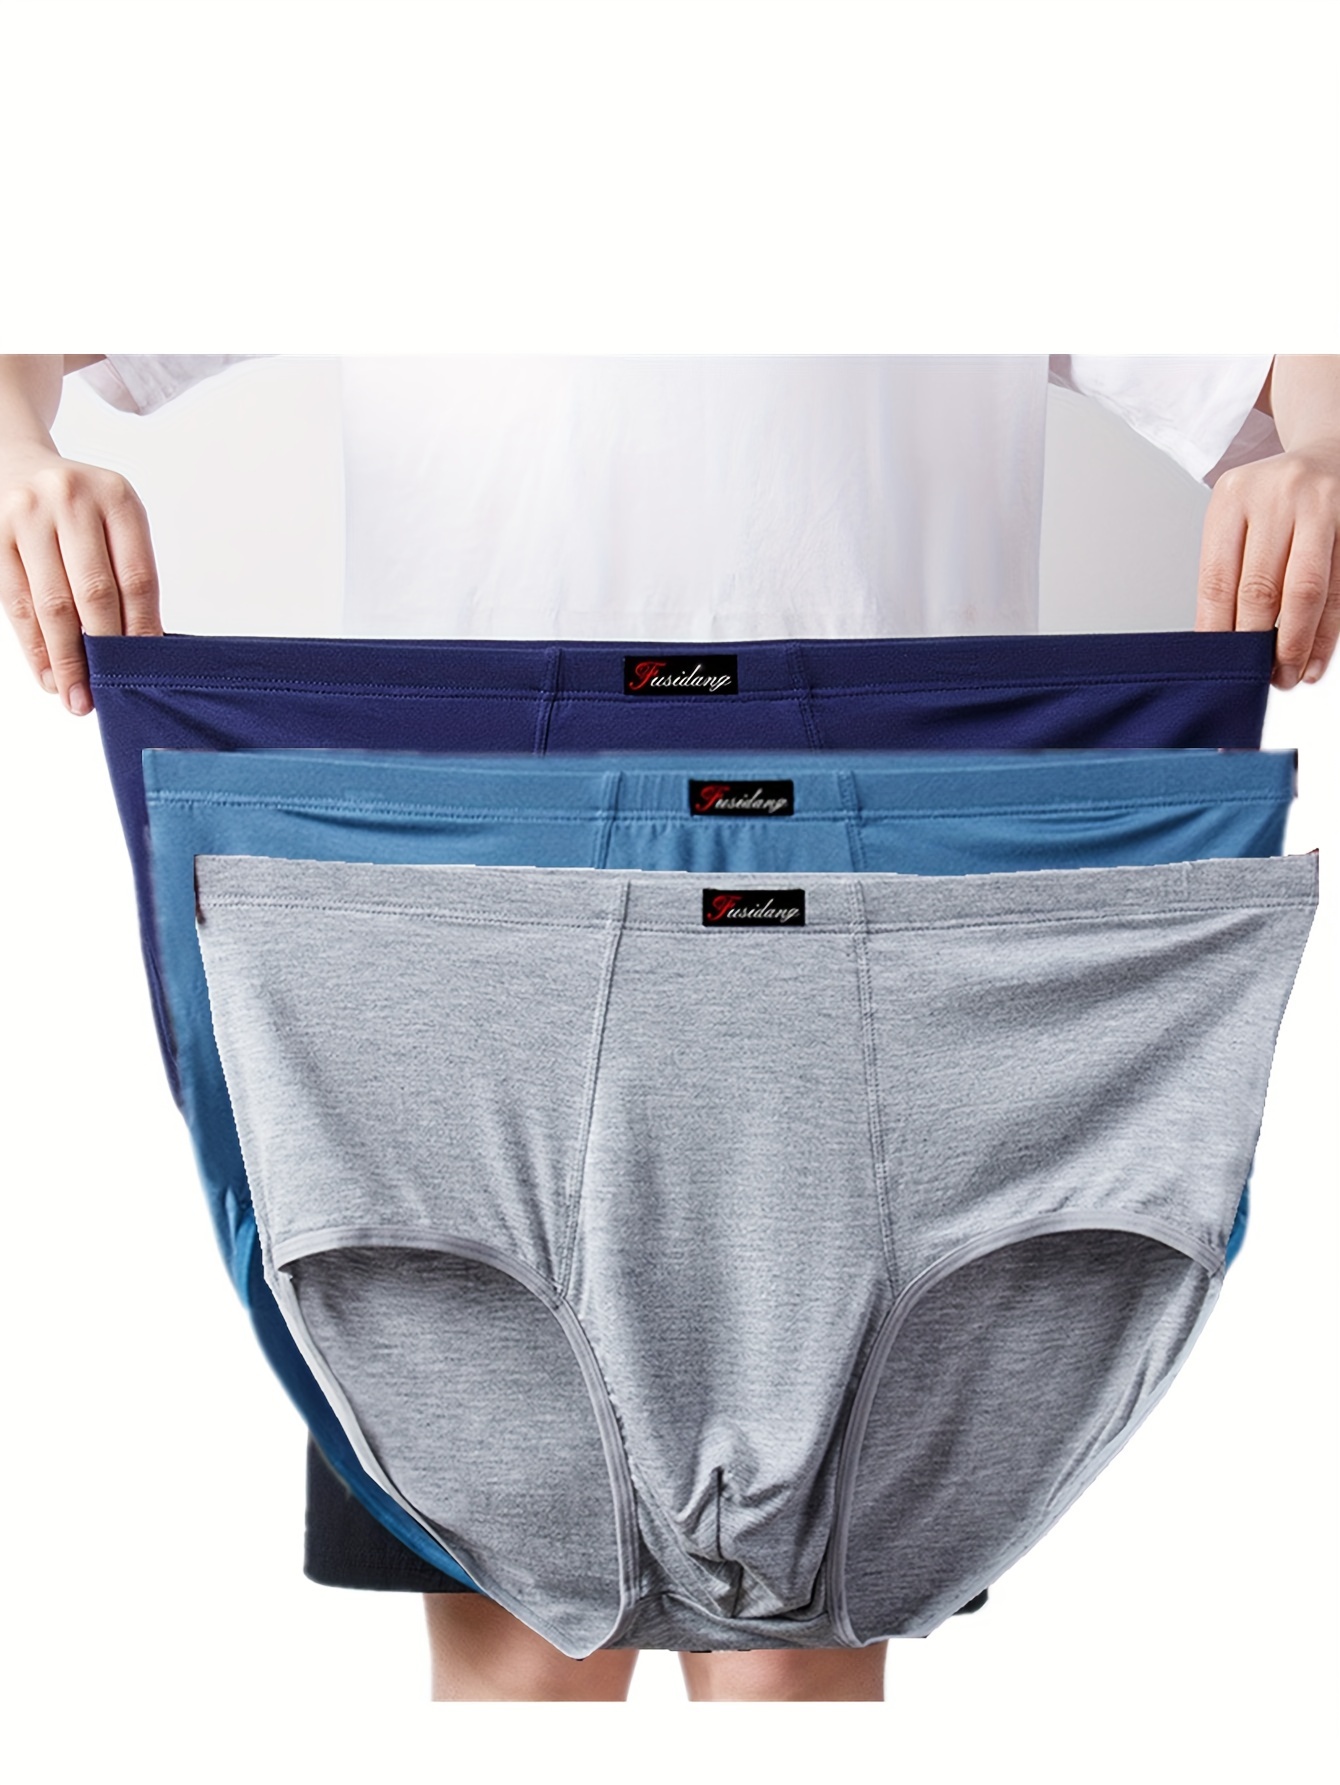 Plus Size Cotton Crotch Briefs Elastic Waist Fit Men Underwear